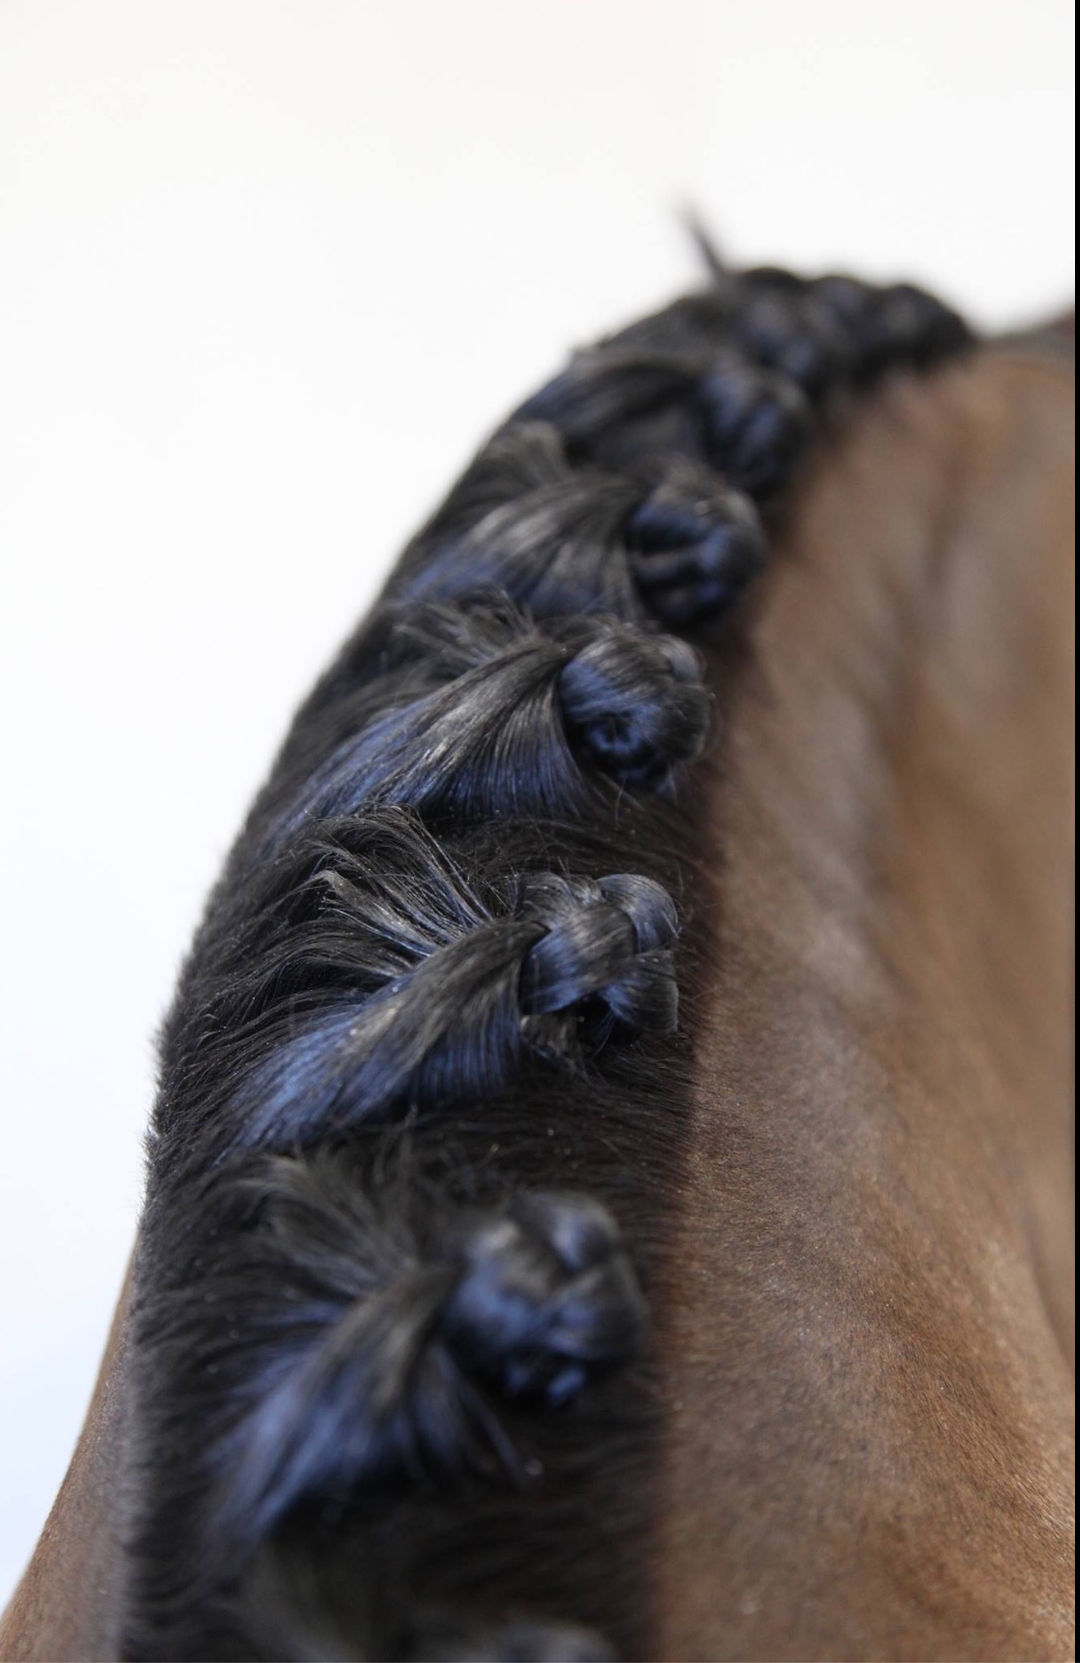 Hairy Pony Taming Wax